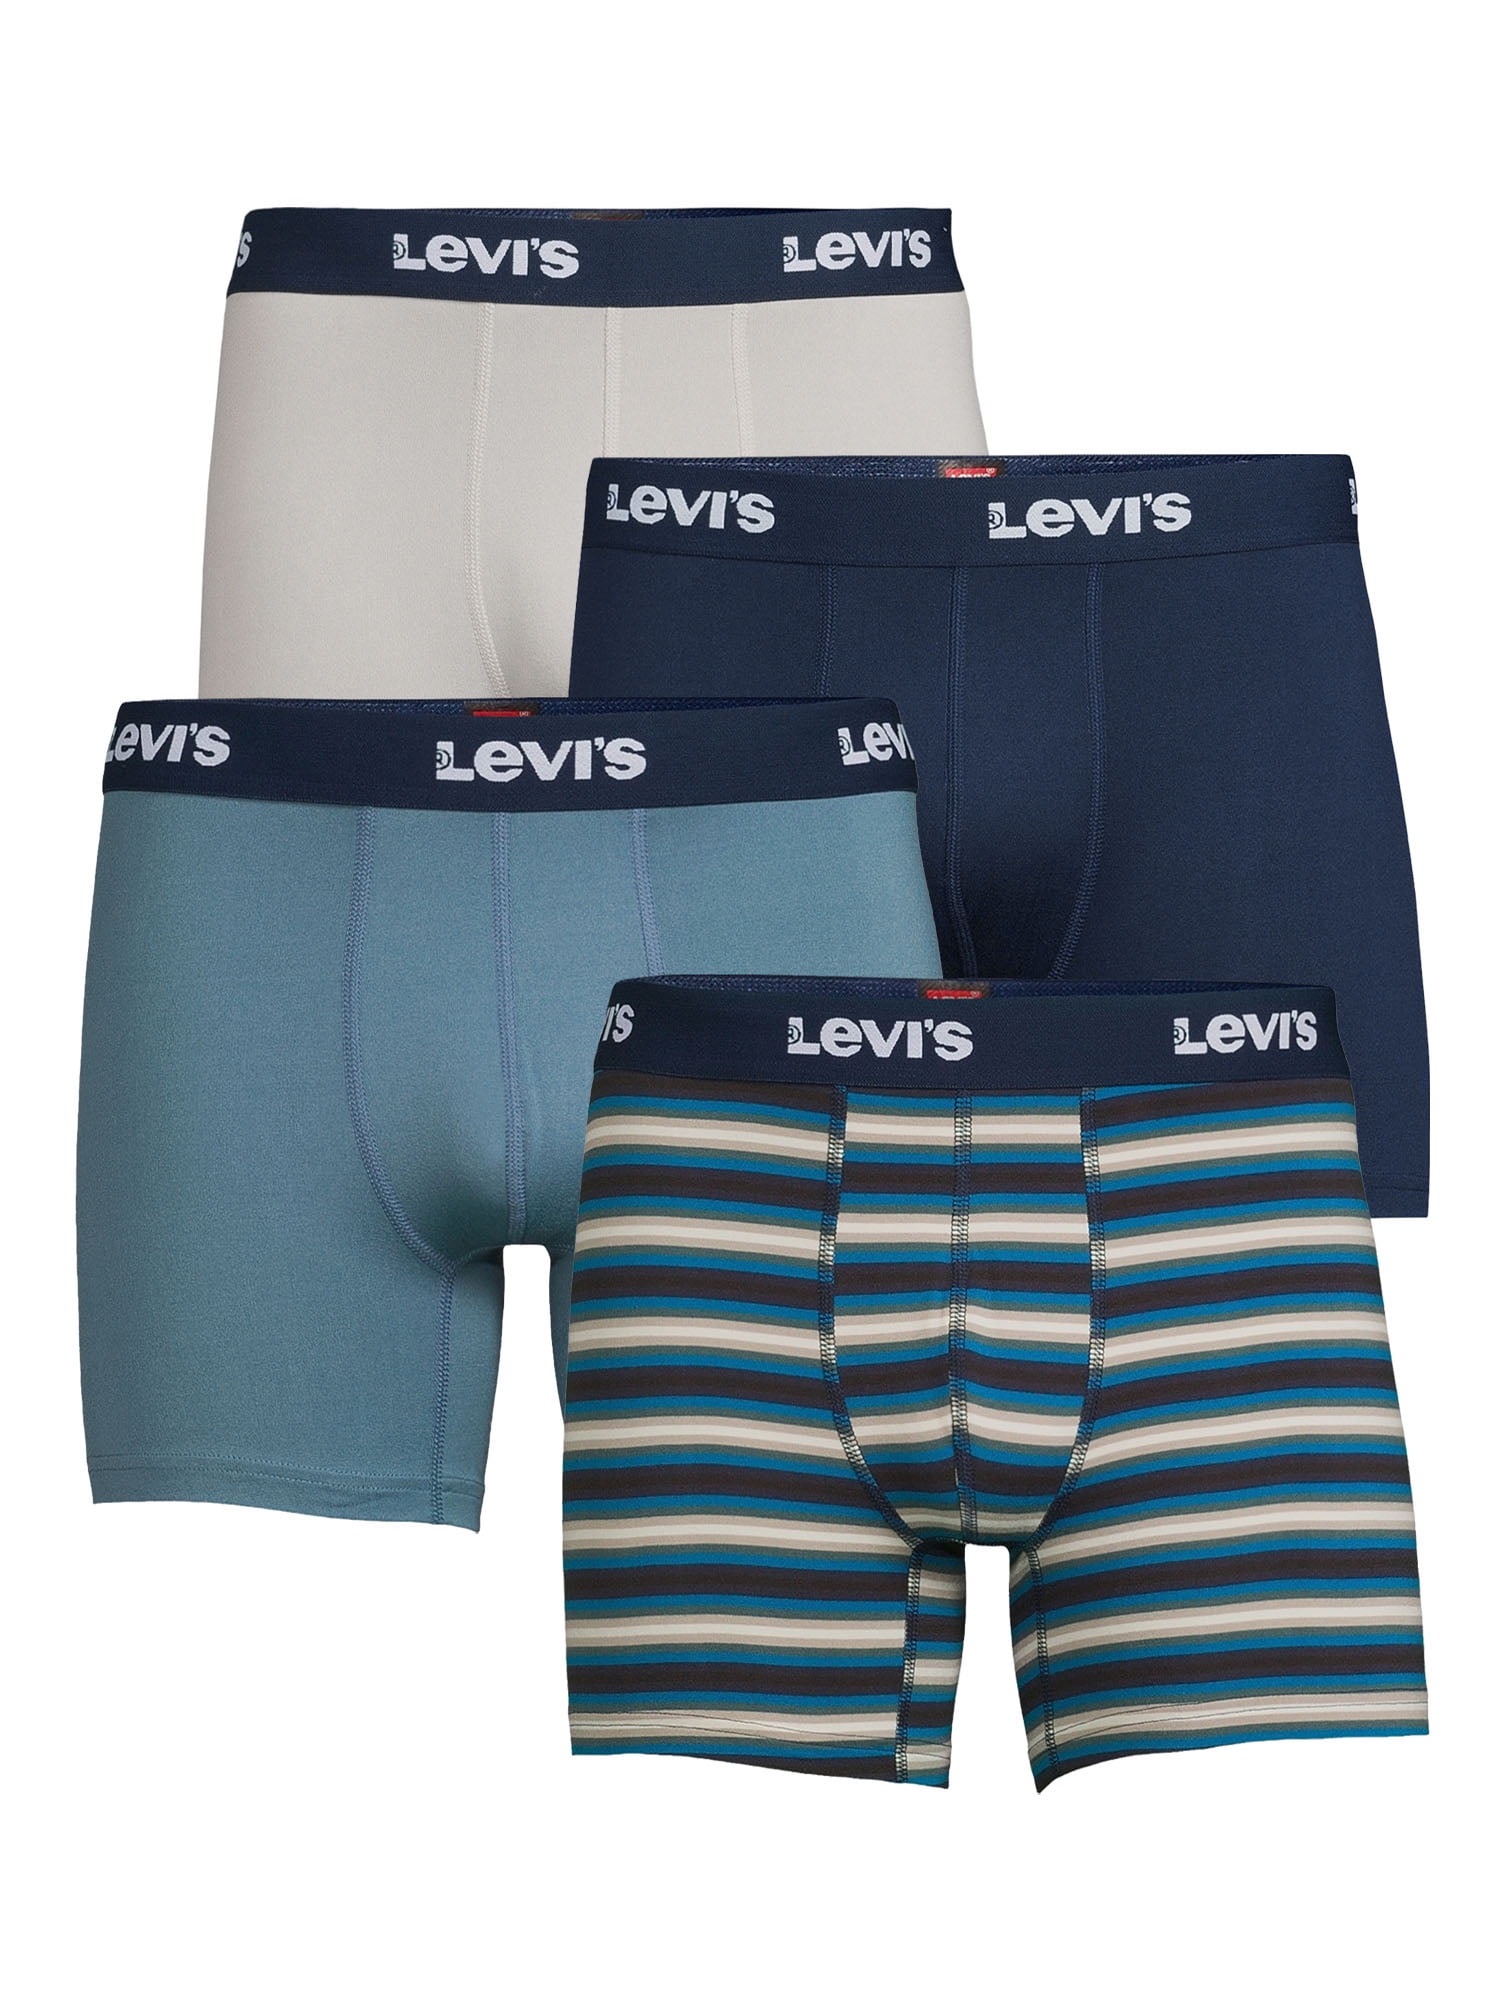 Levi’s Men’s Microfiber Boxer Briefs, 4-Pack - Walmart.com